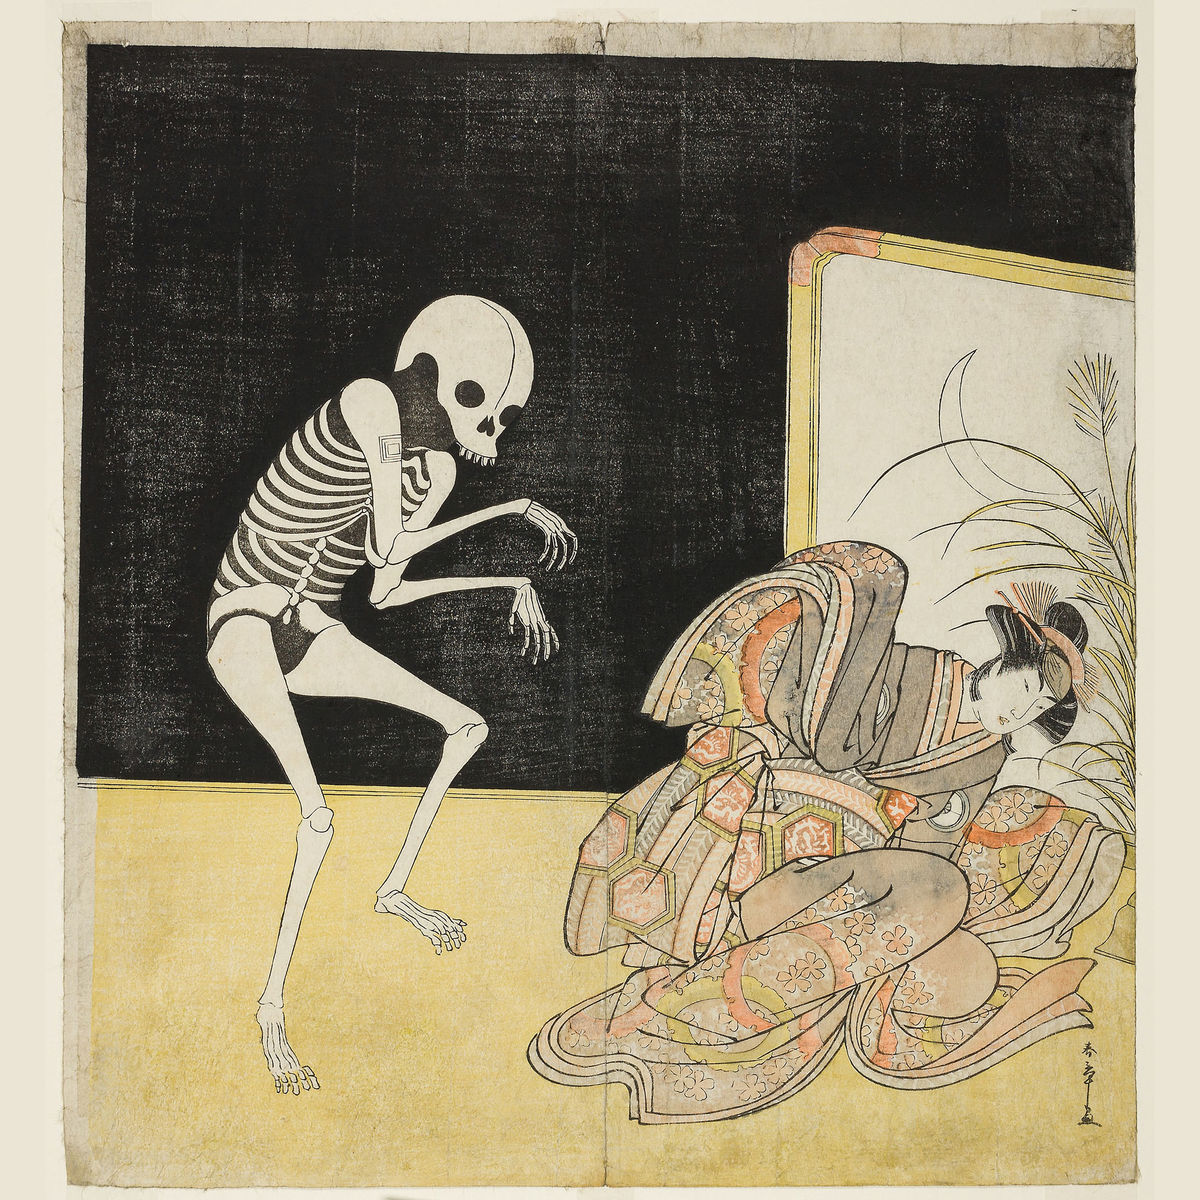 Actor Ichikawa Danjuro V As A Skeleton and Iwai Hanshiro IV as Princess Sakura by Katsukawa Shunsho - 1783